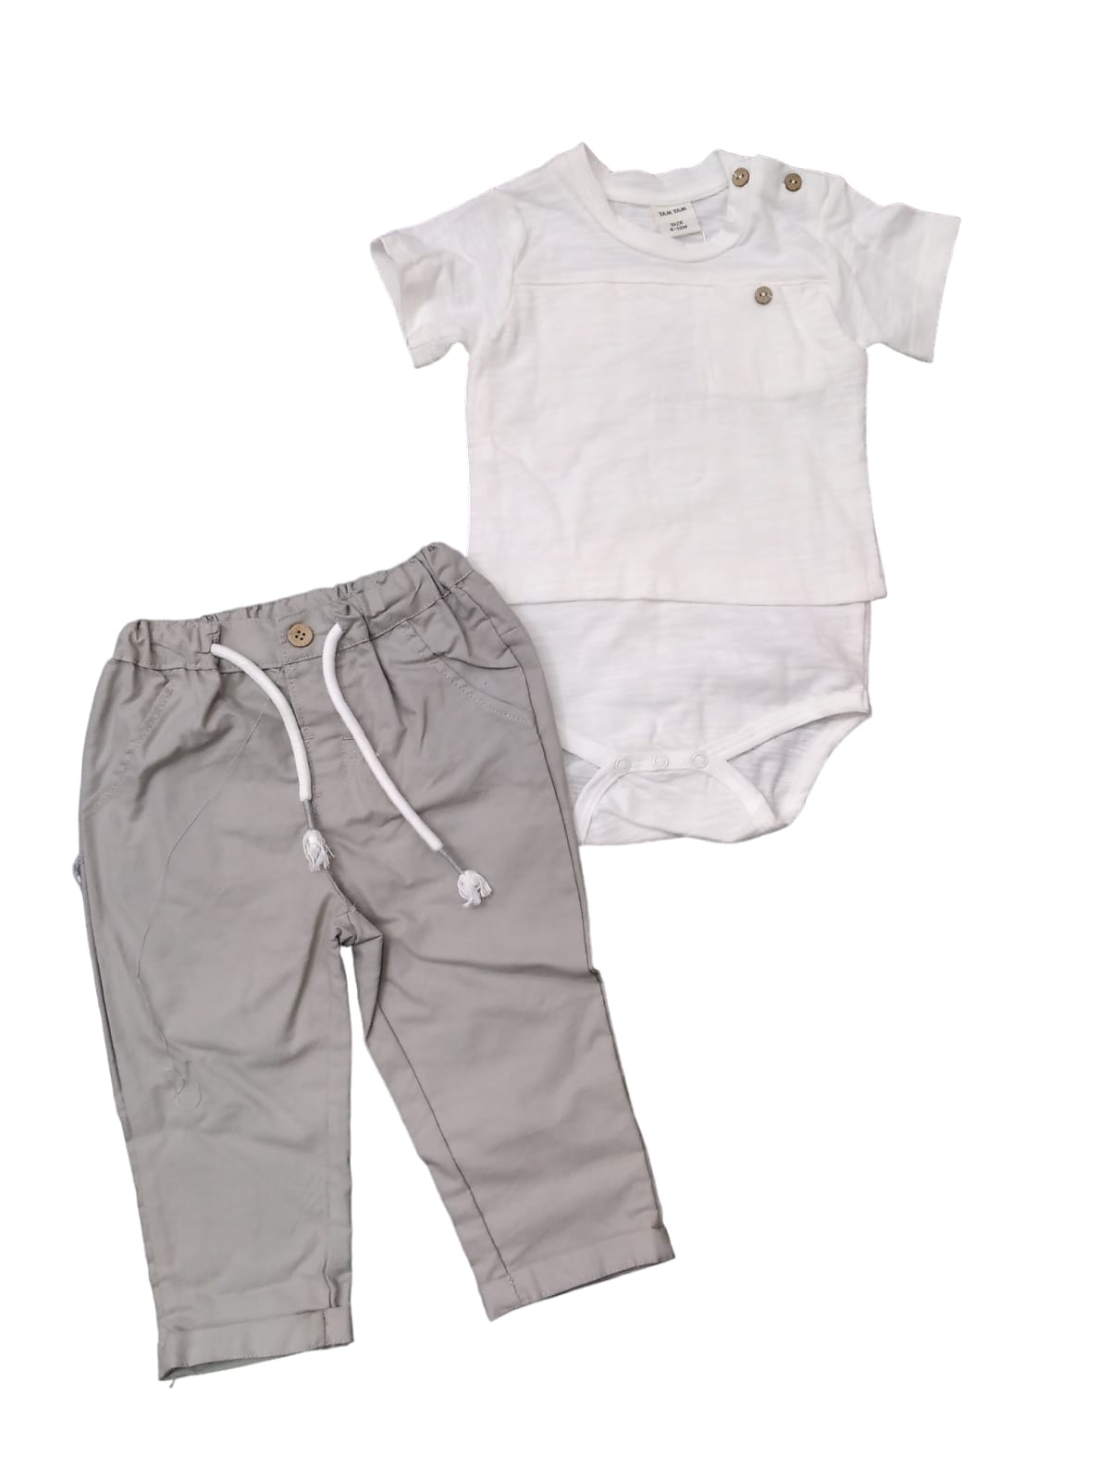 חליפה בגד גוף תינוקות 6-24M בנים (אופוויט/אפור)